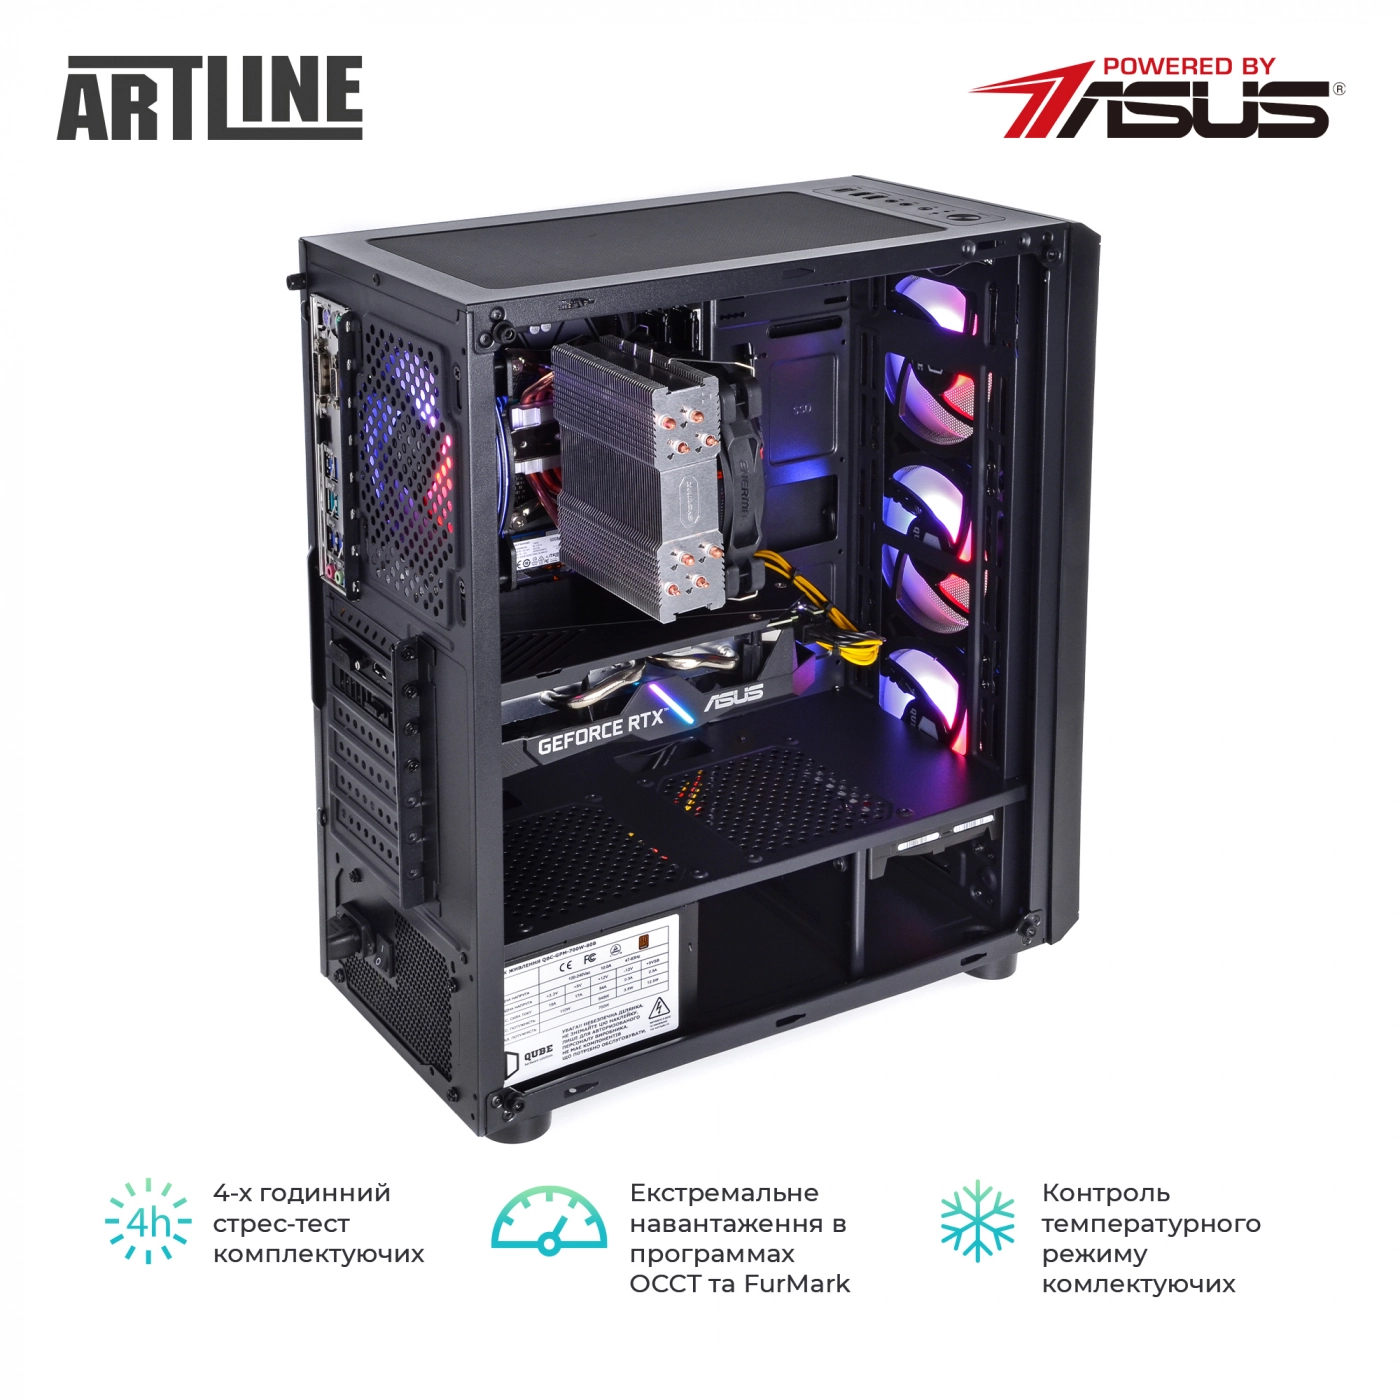 Купить Компьютер ARTLINE Gaming X68v23 - фото 9